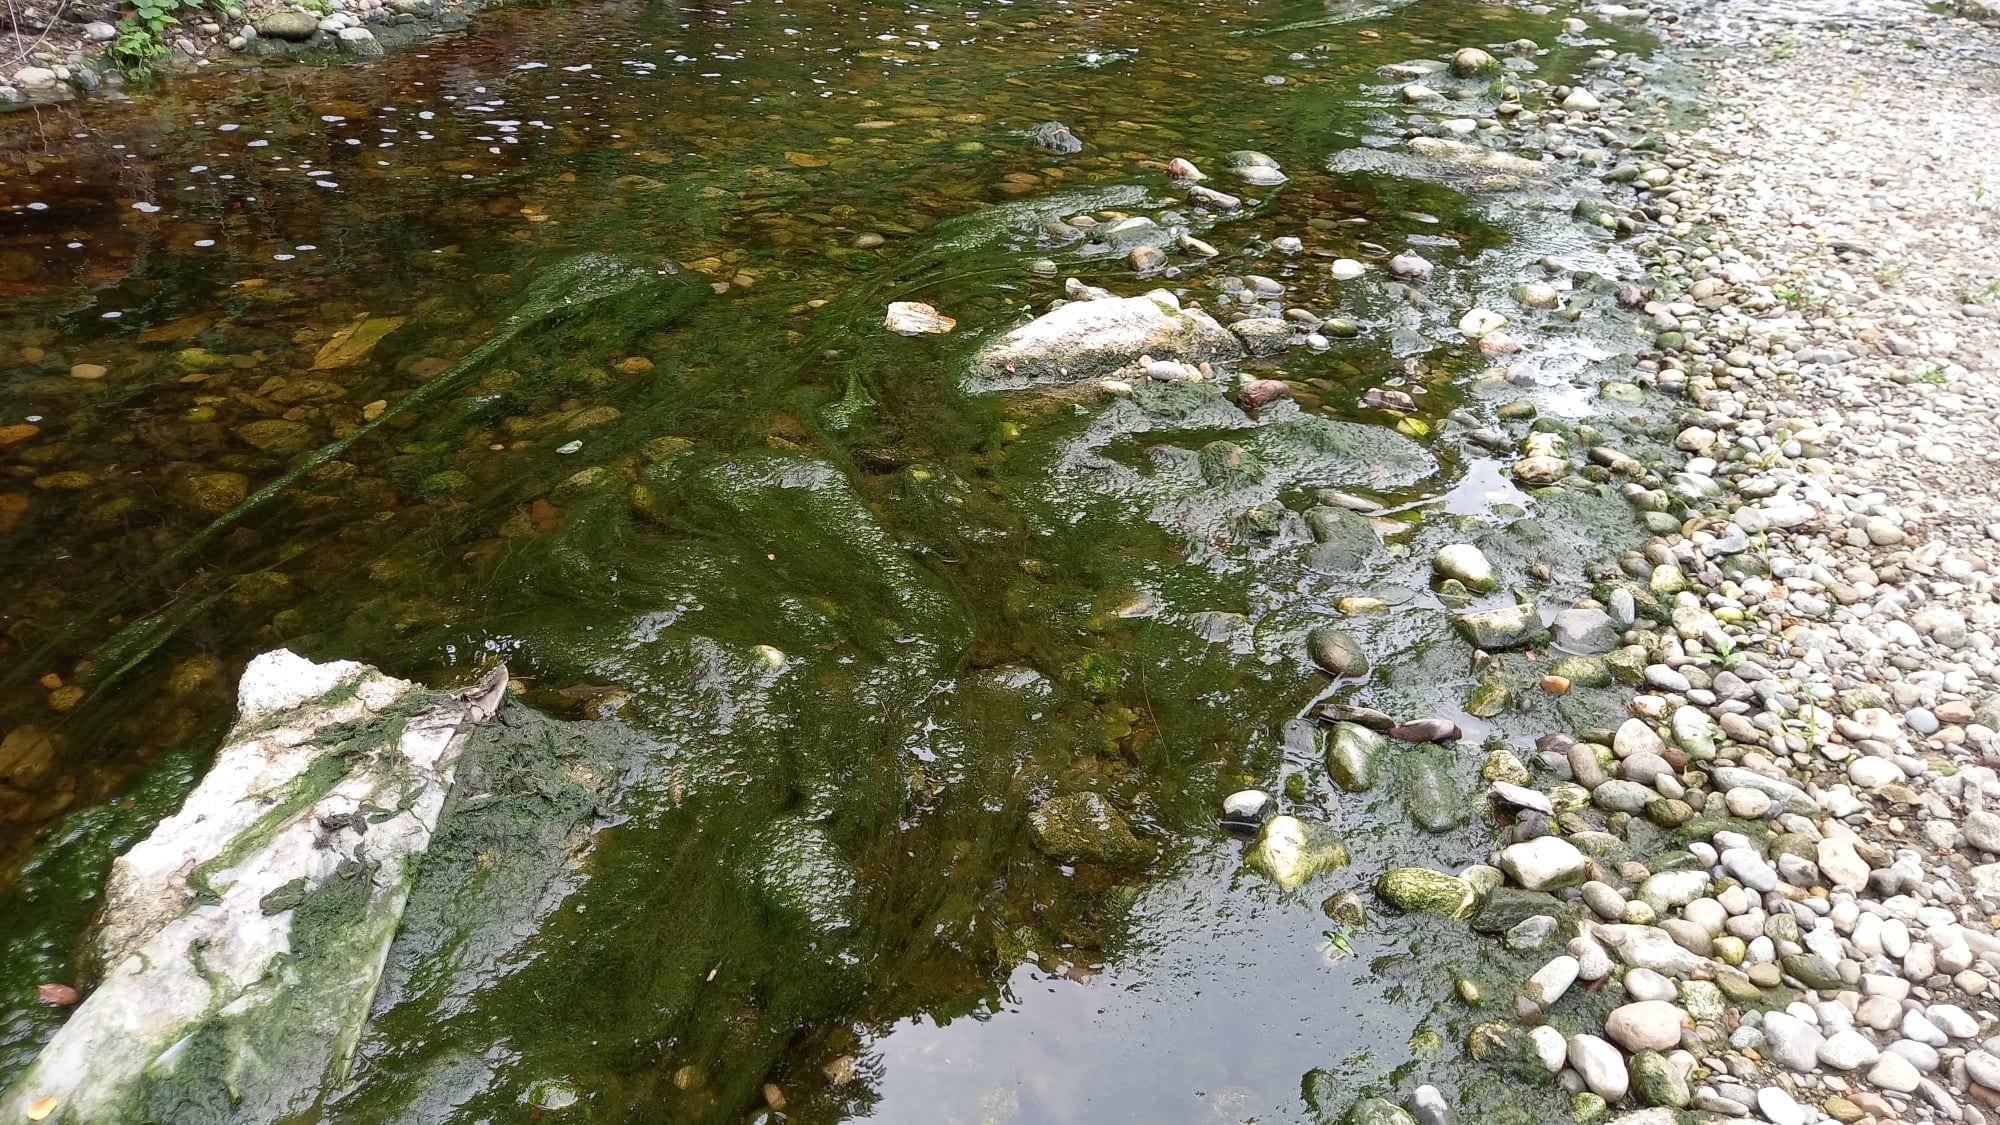 Ambientalisti preoccupati: adesso il torrente Lura s’è riempito di alghe verdi